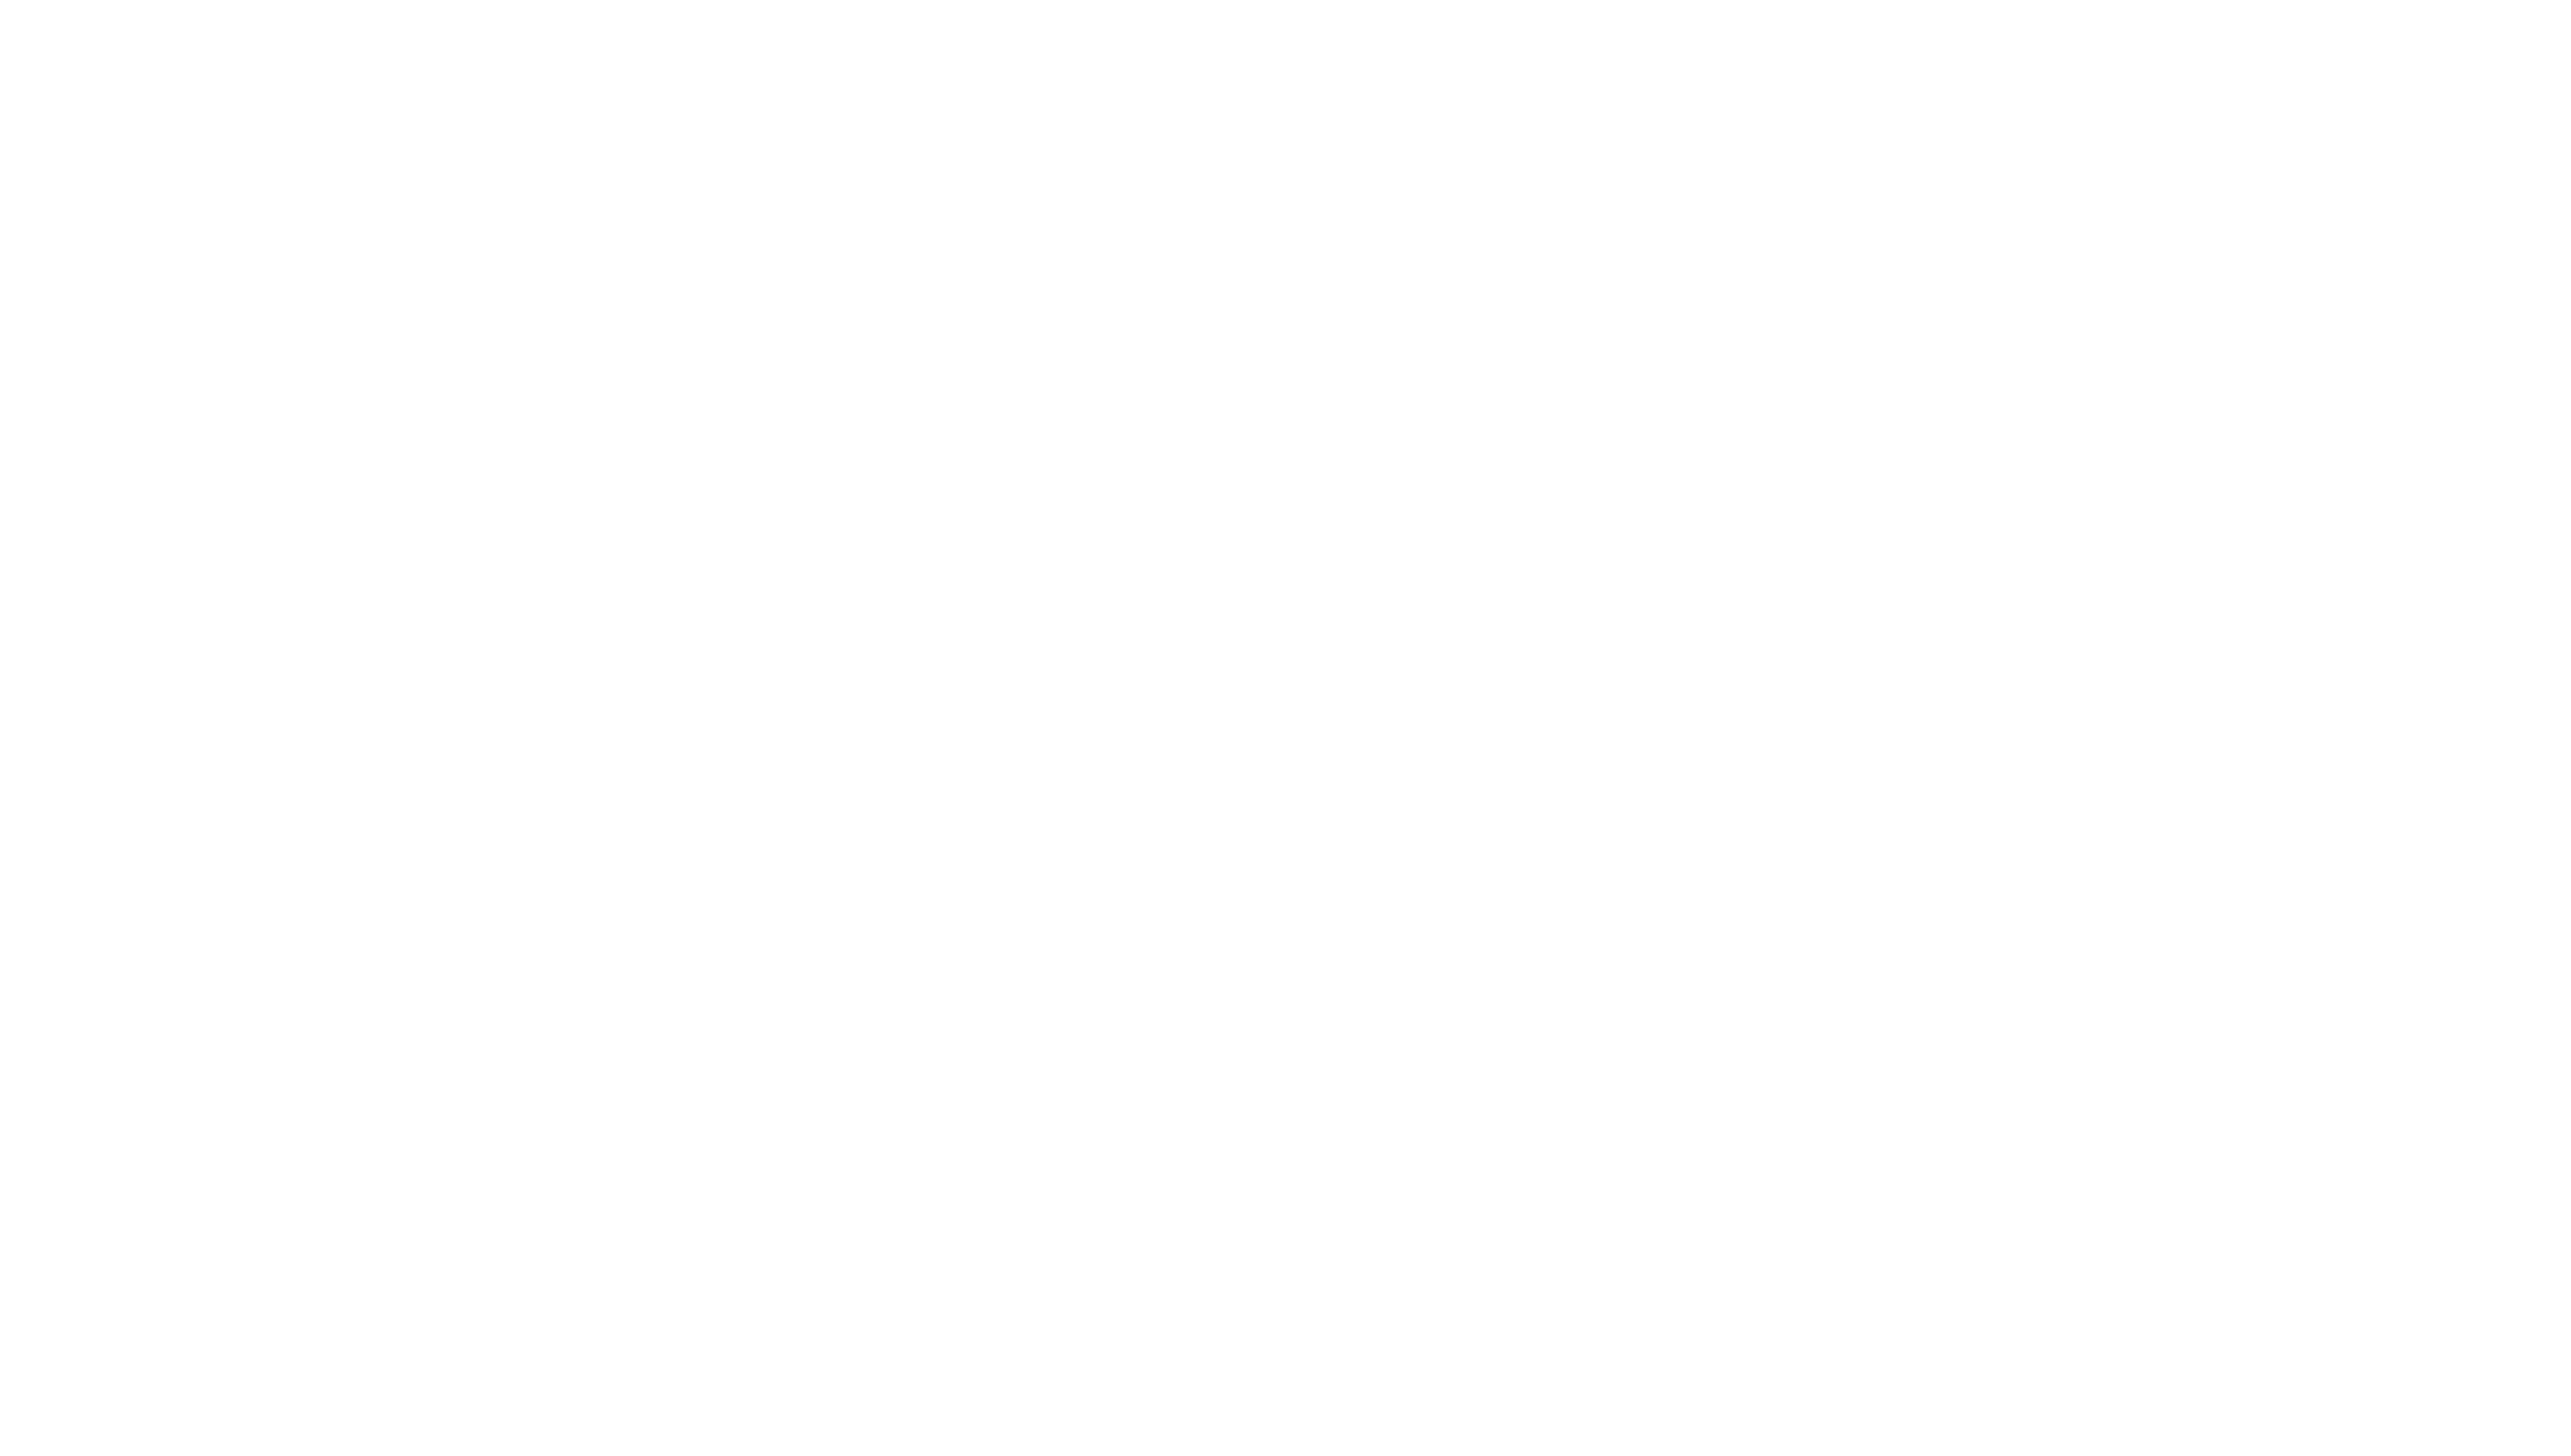 The Judas Cradle